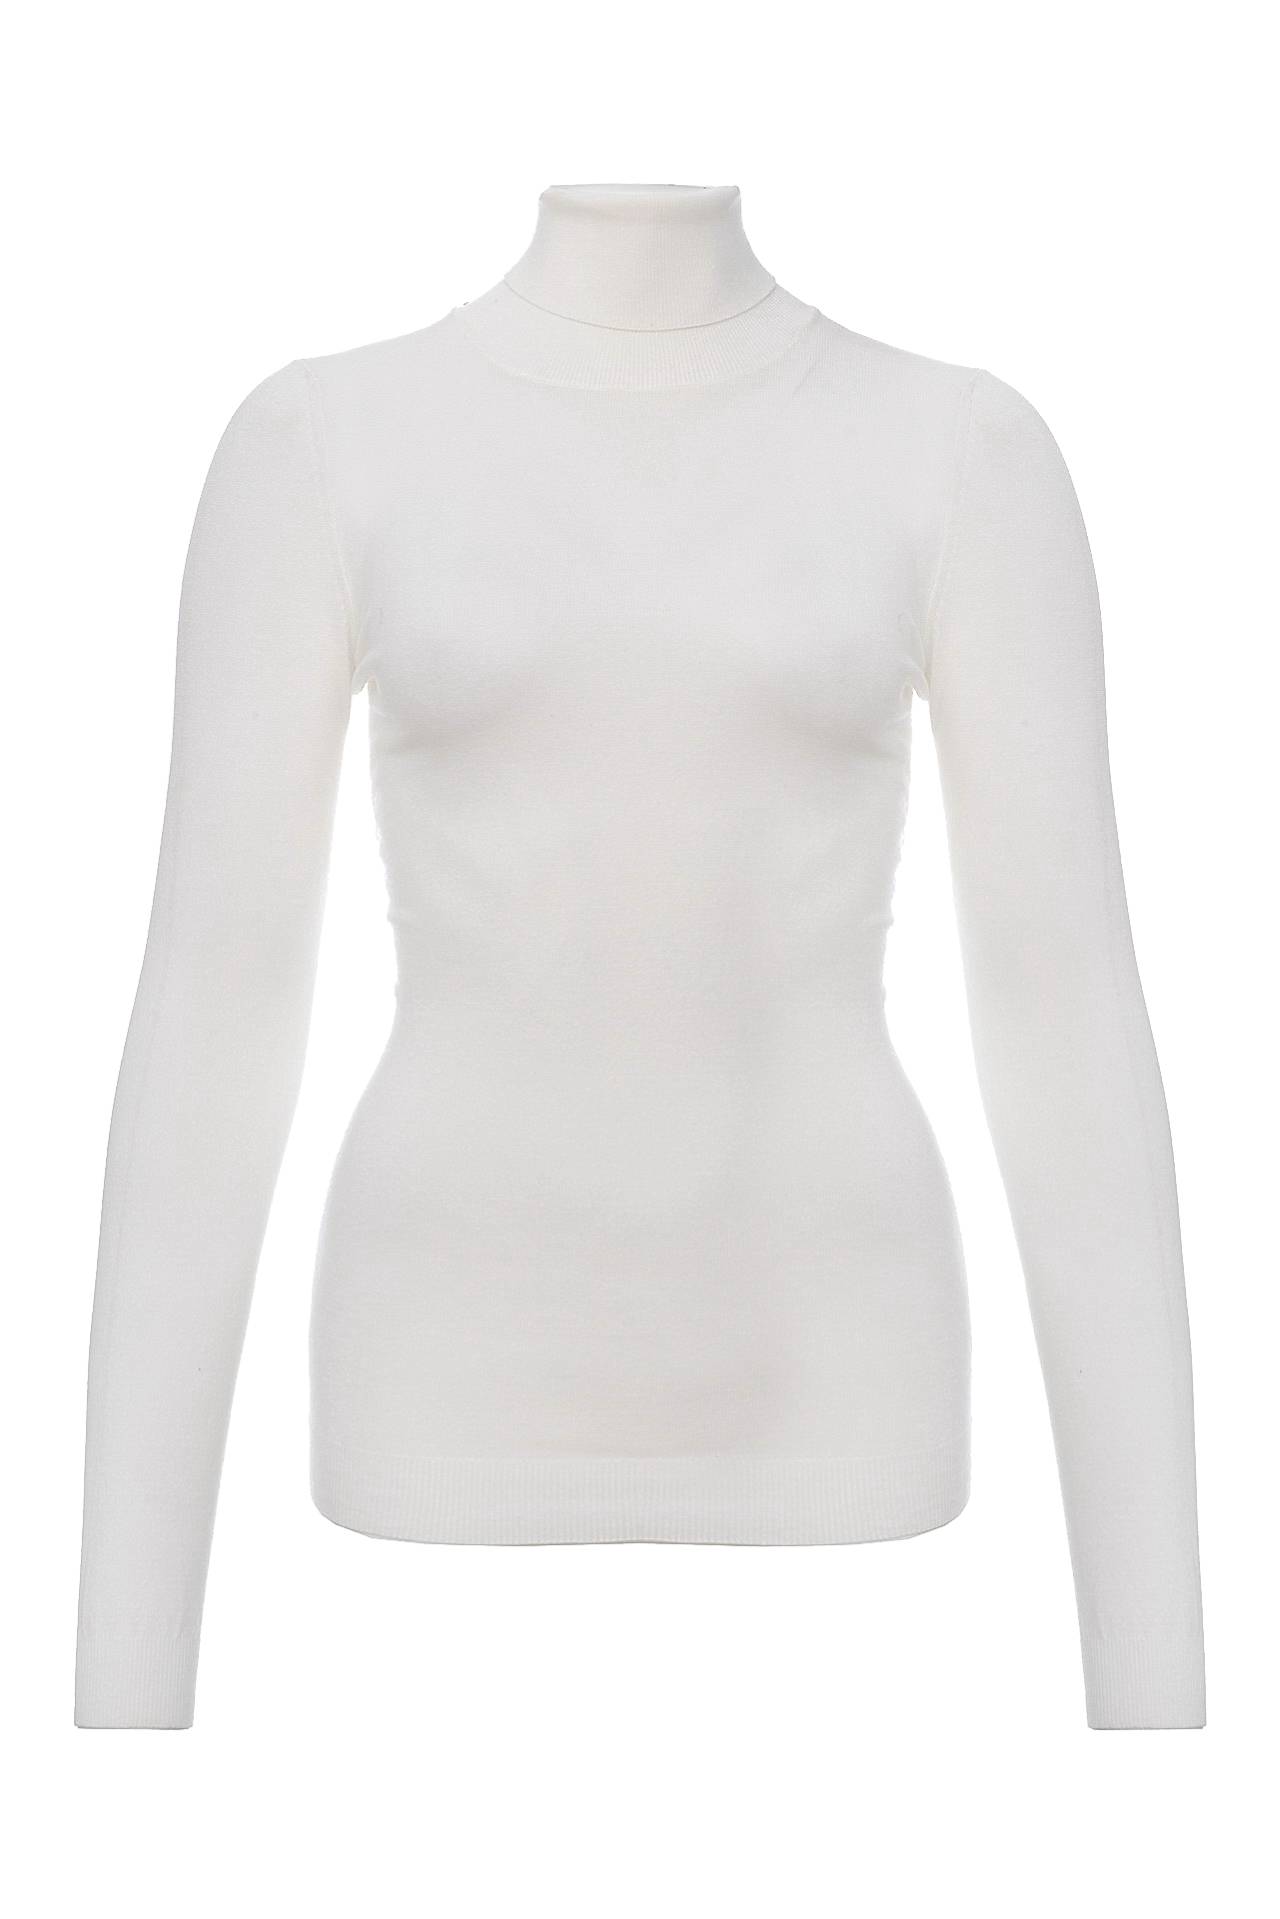 Одежда женская Водолазка NORTHLAND (2041D/13.1). Купить за 3120 руб.